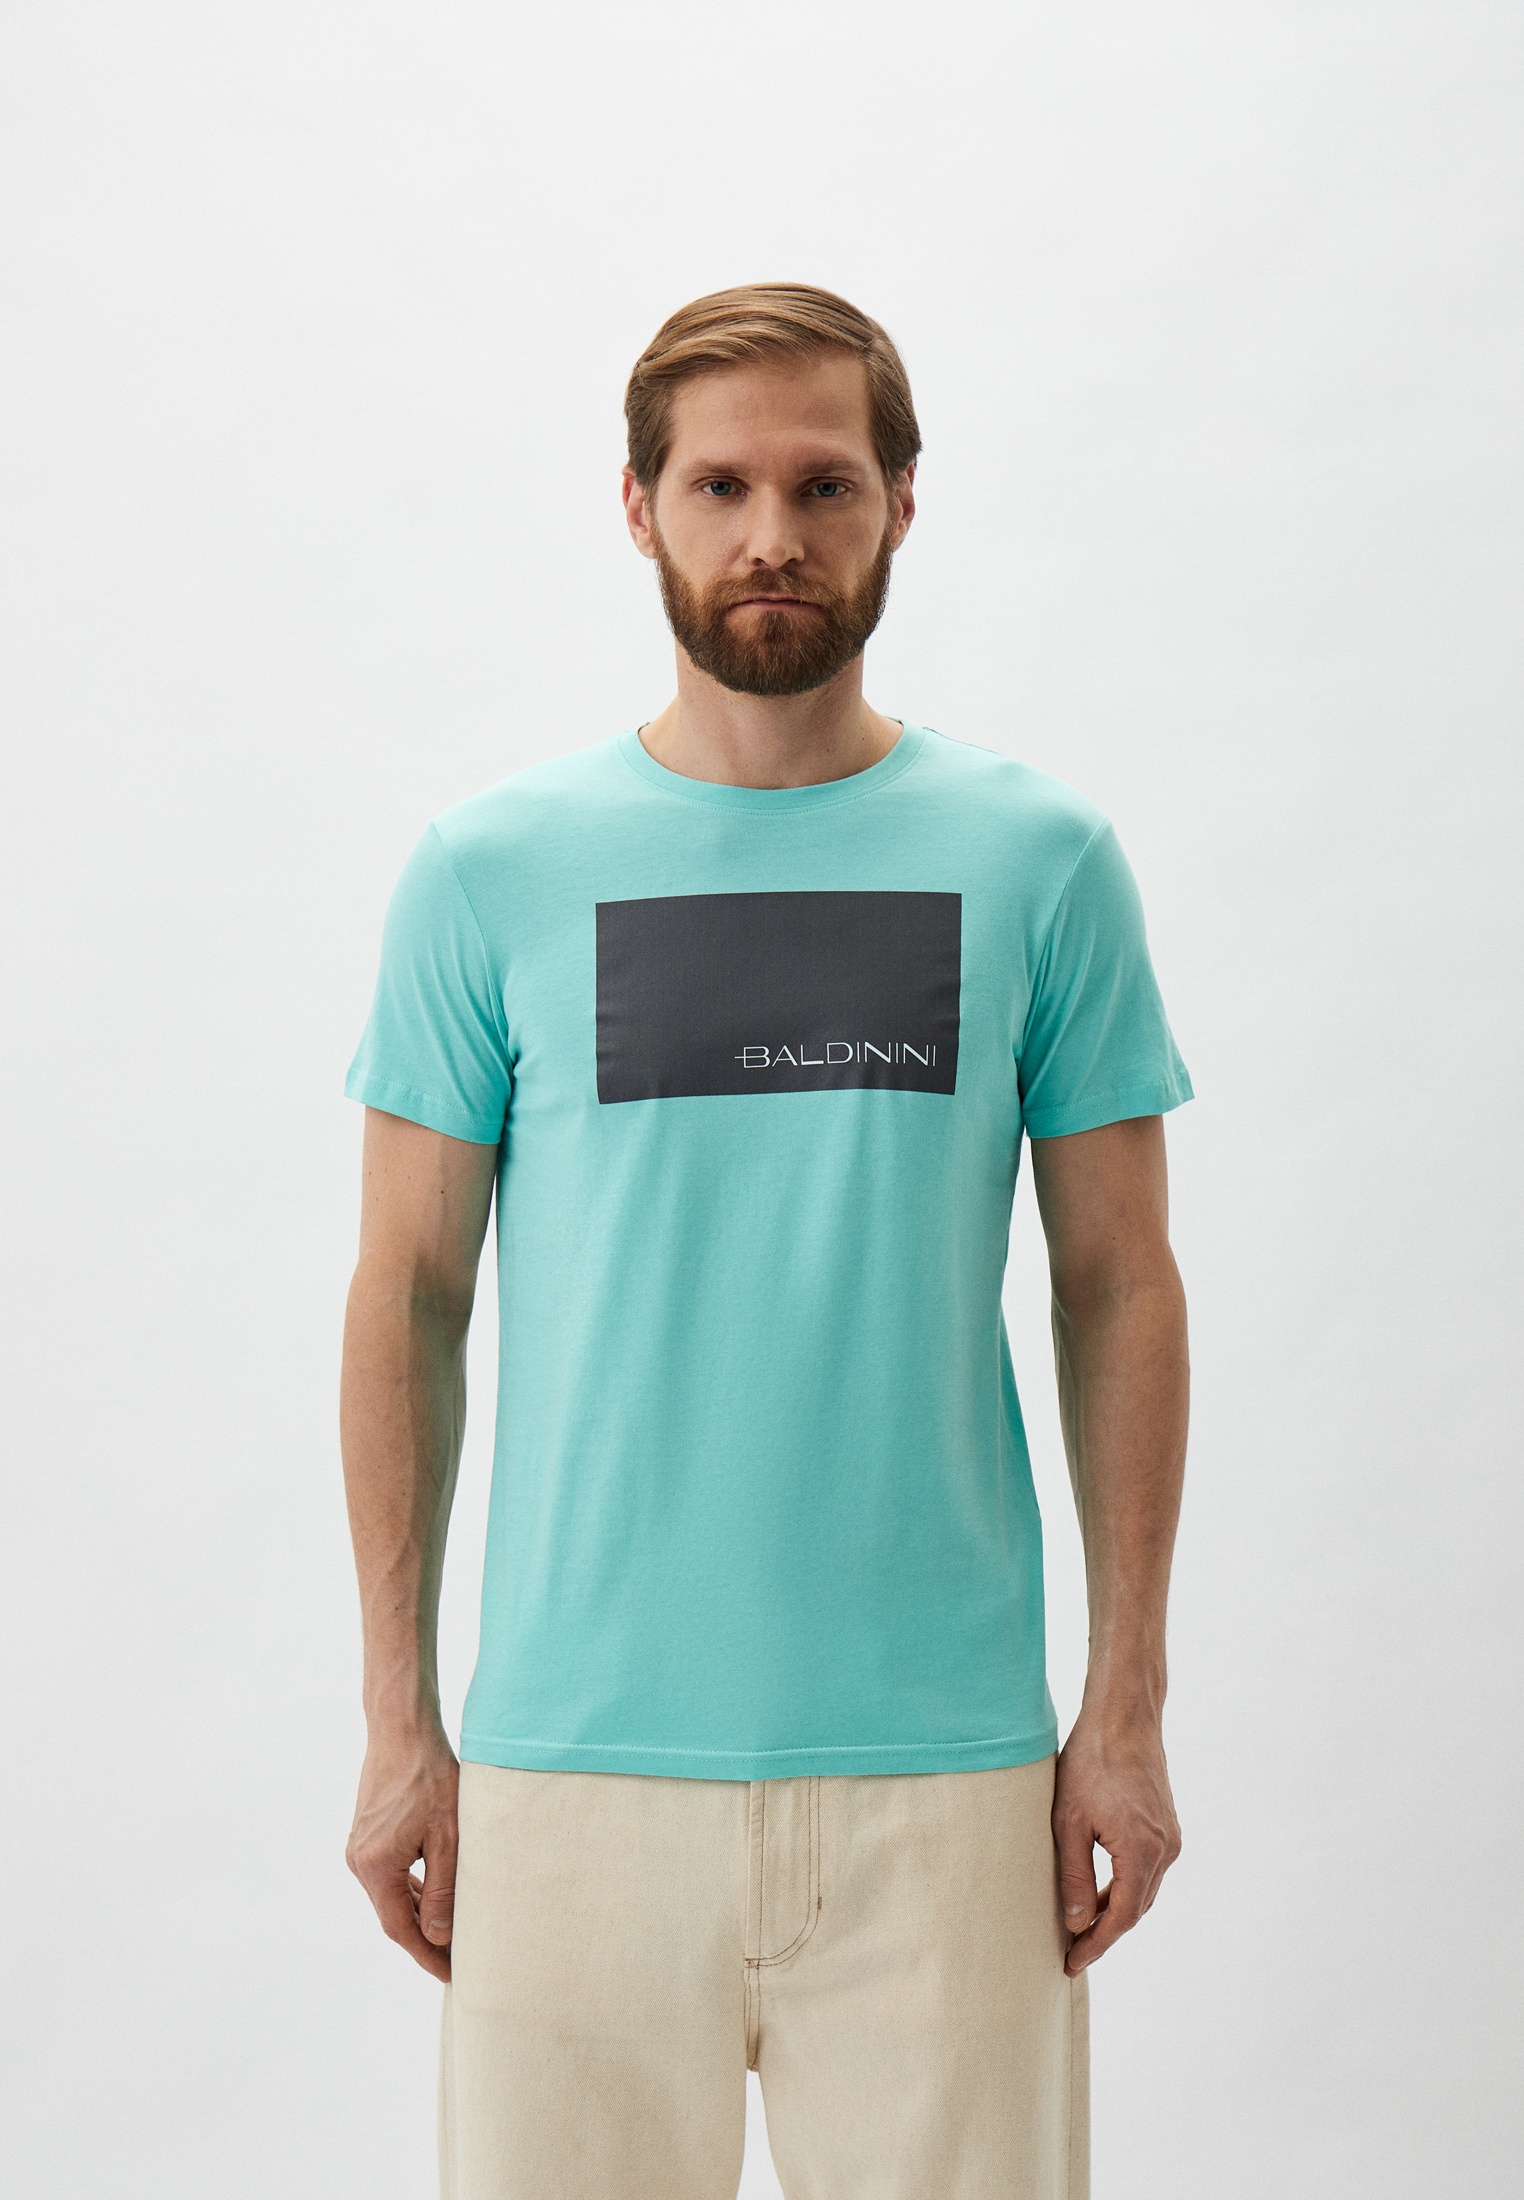 Мужская футболка Baldinini (Балдинини) B-OLM-M014: изображение 1